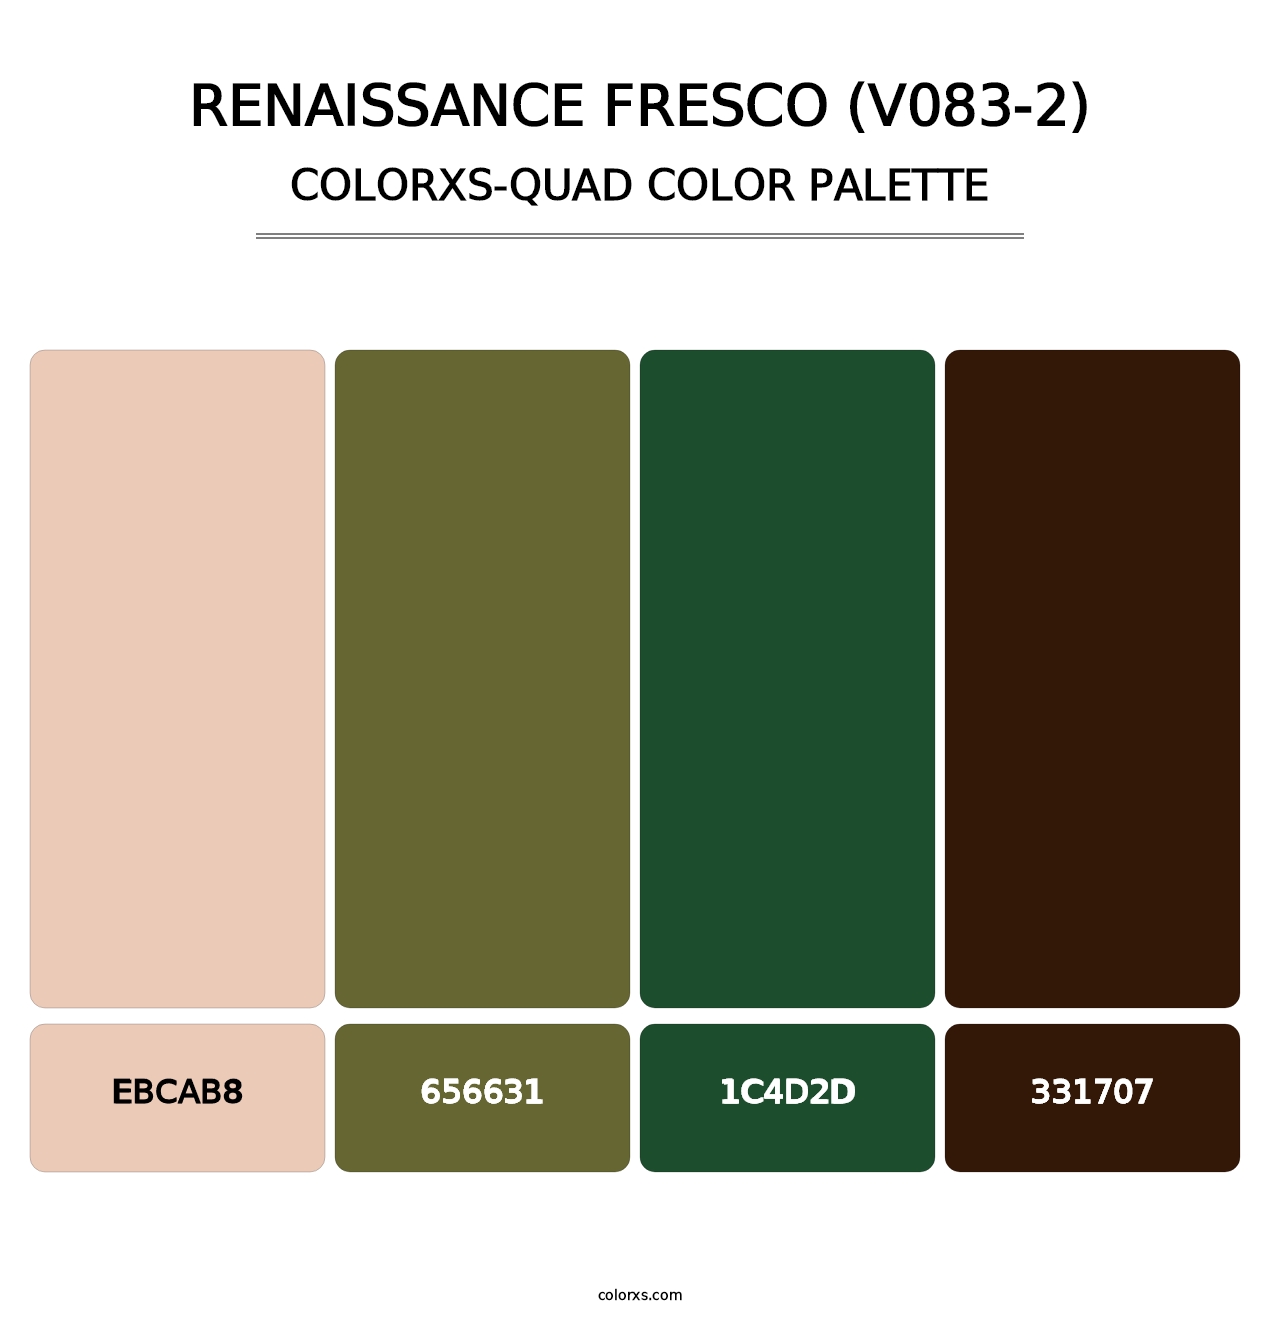 Renaissance Fresco (V083-2) - Colorxs Quad Palette